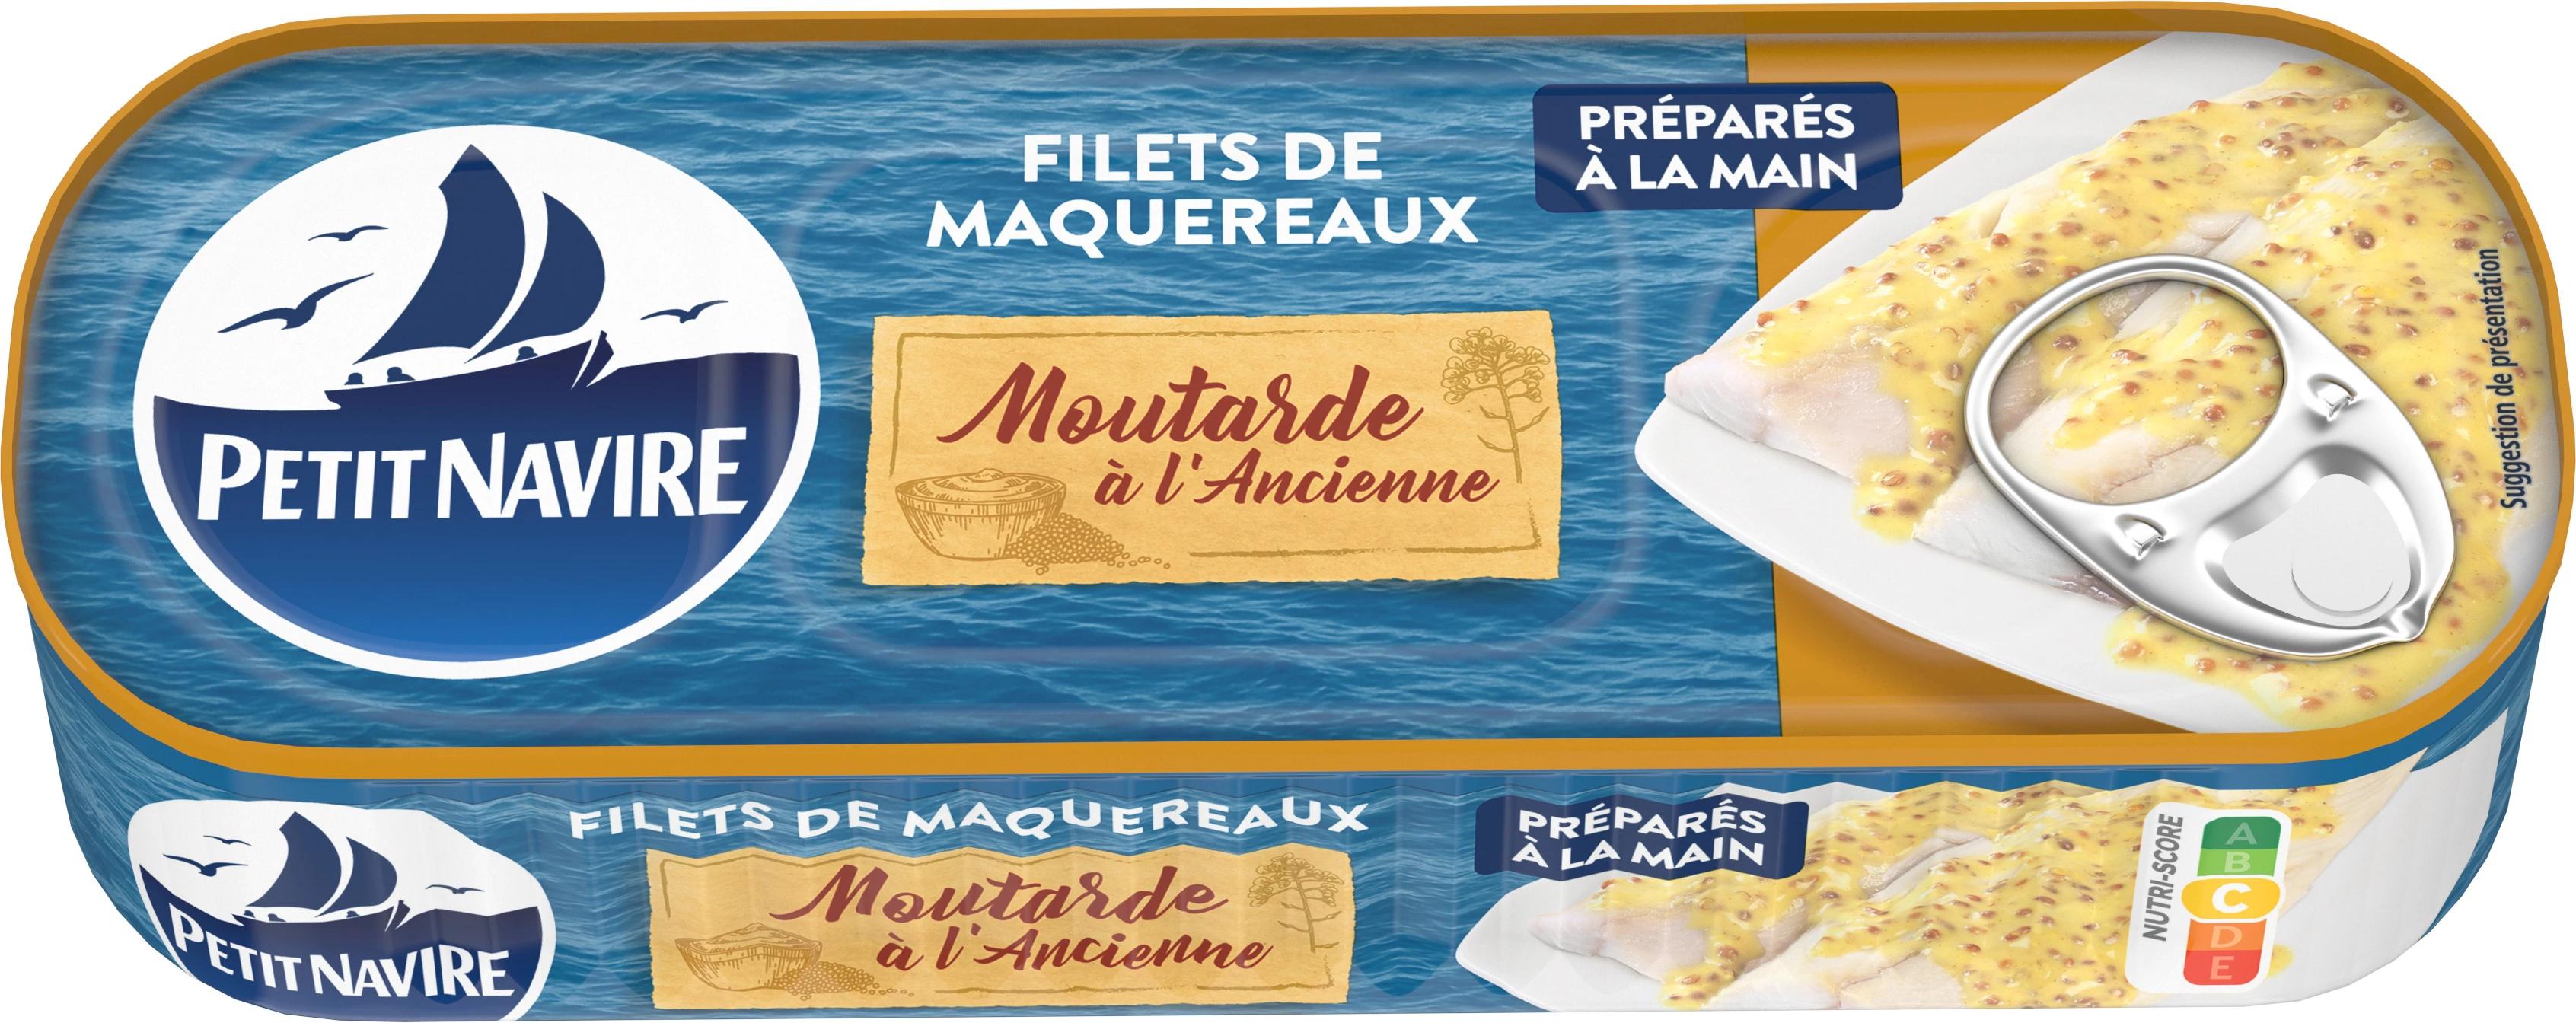 Filets de Maquereaux Sauce Moutarde, 169g  - PETIT NAVIRE